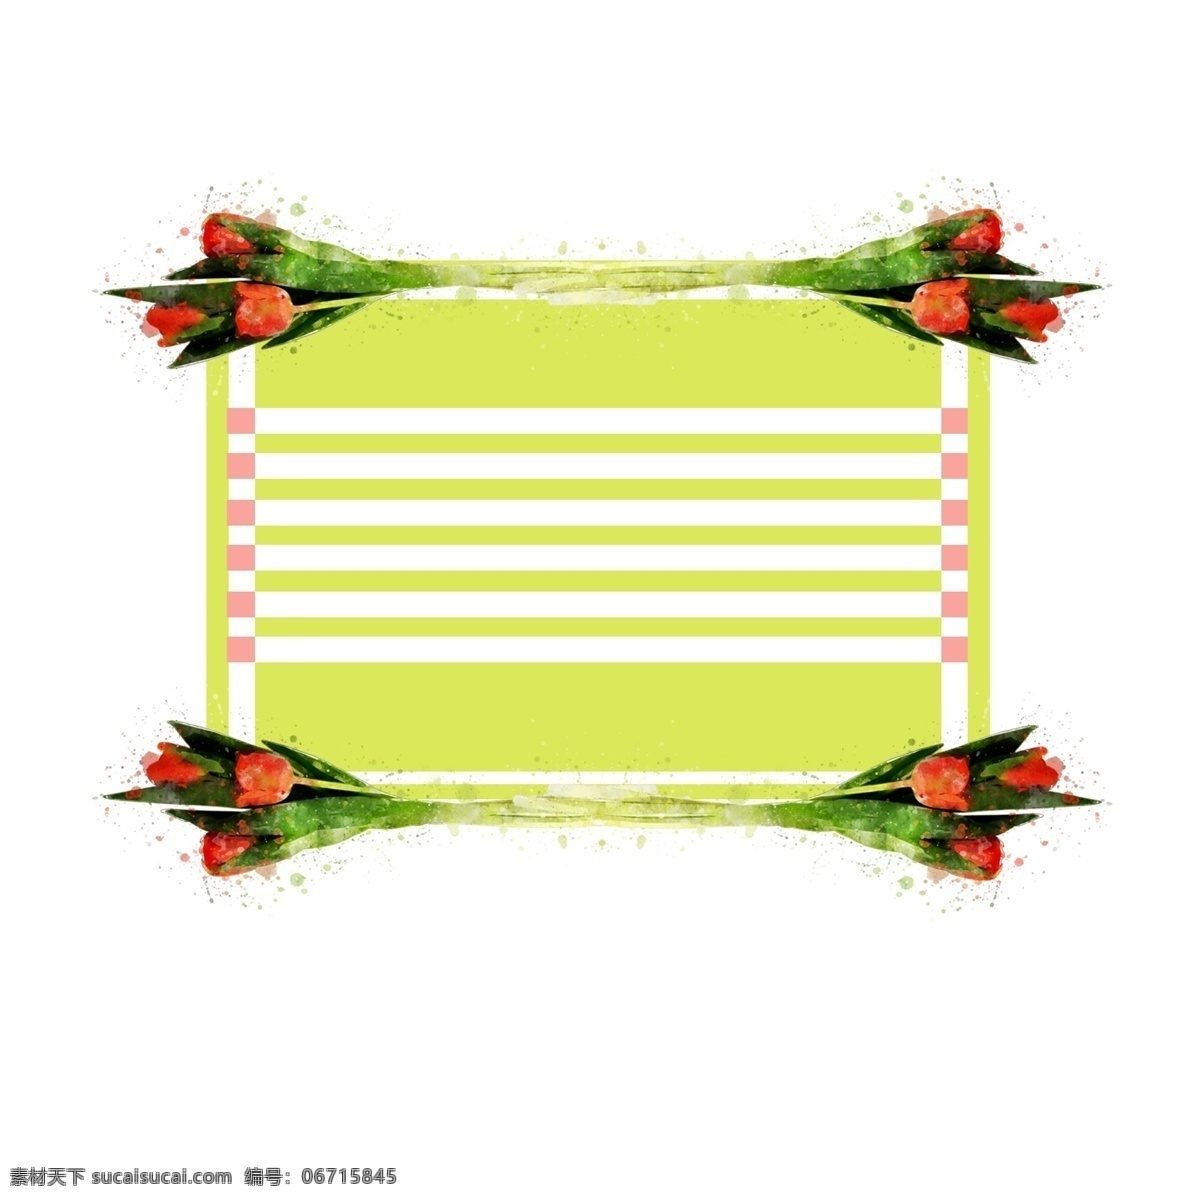 手绘 植物 绿色 花卉 方形 水彩 边框 元素 红色 原创 植物边框 手绘边框 水彩边框